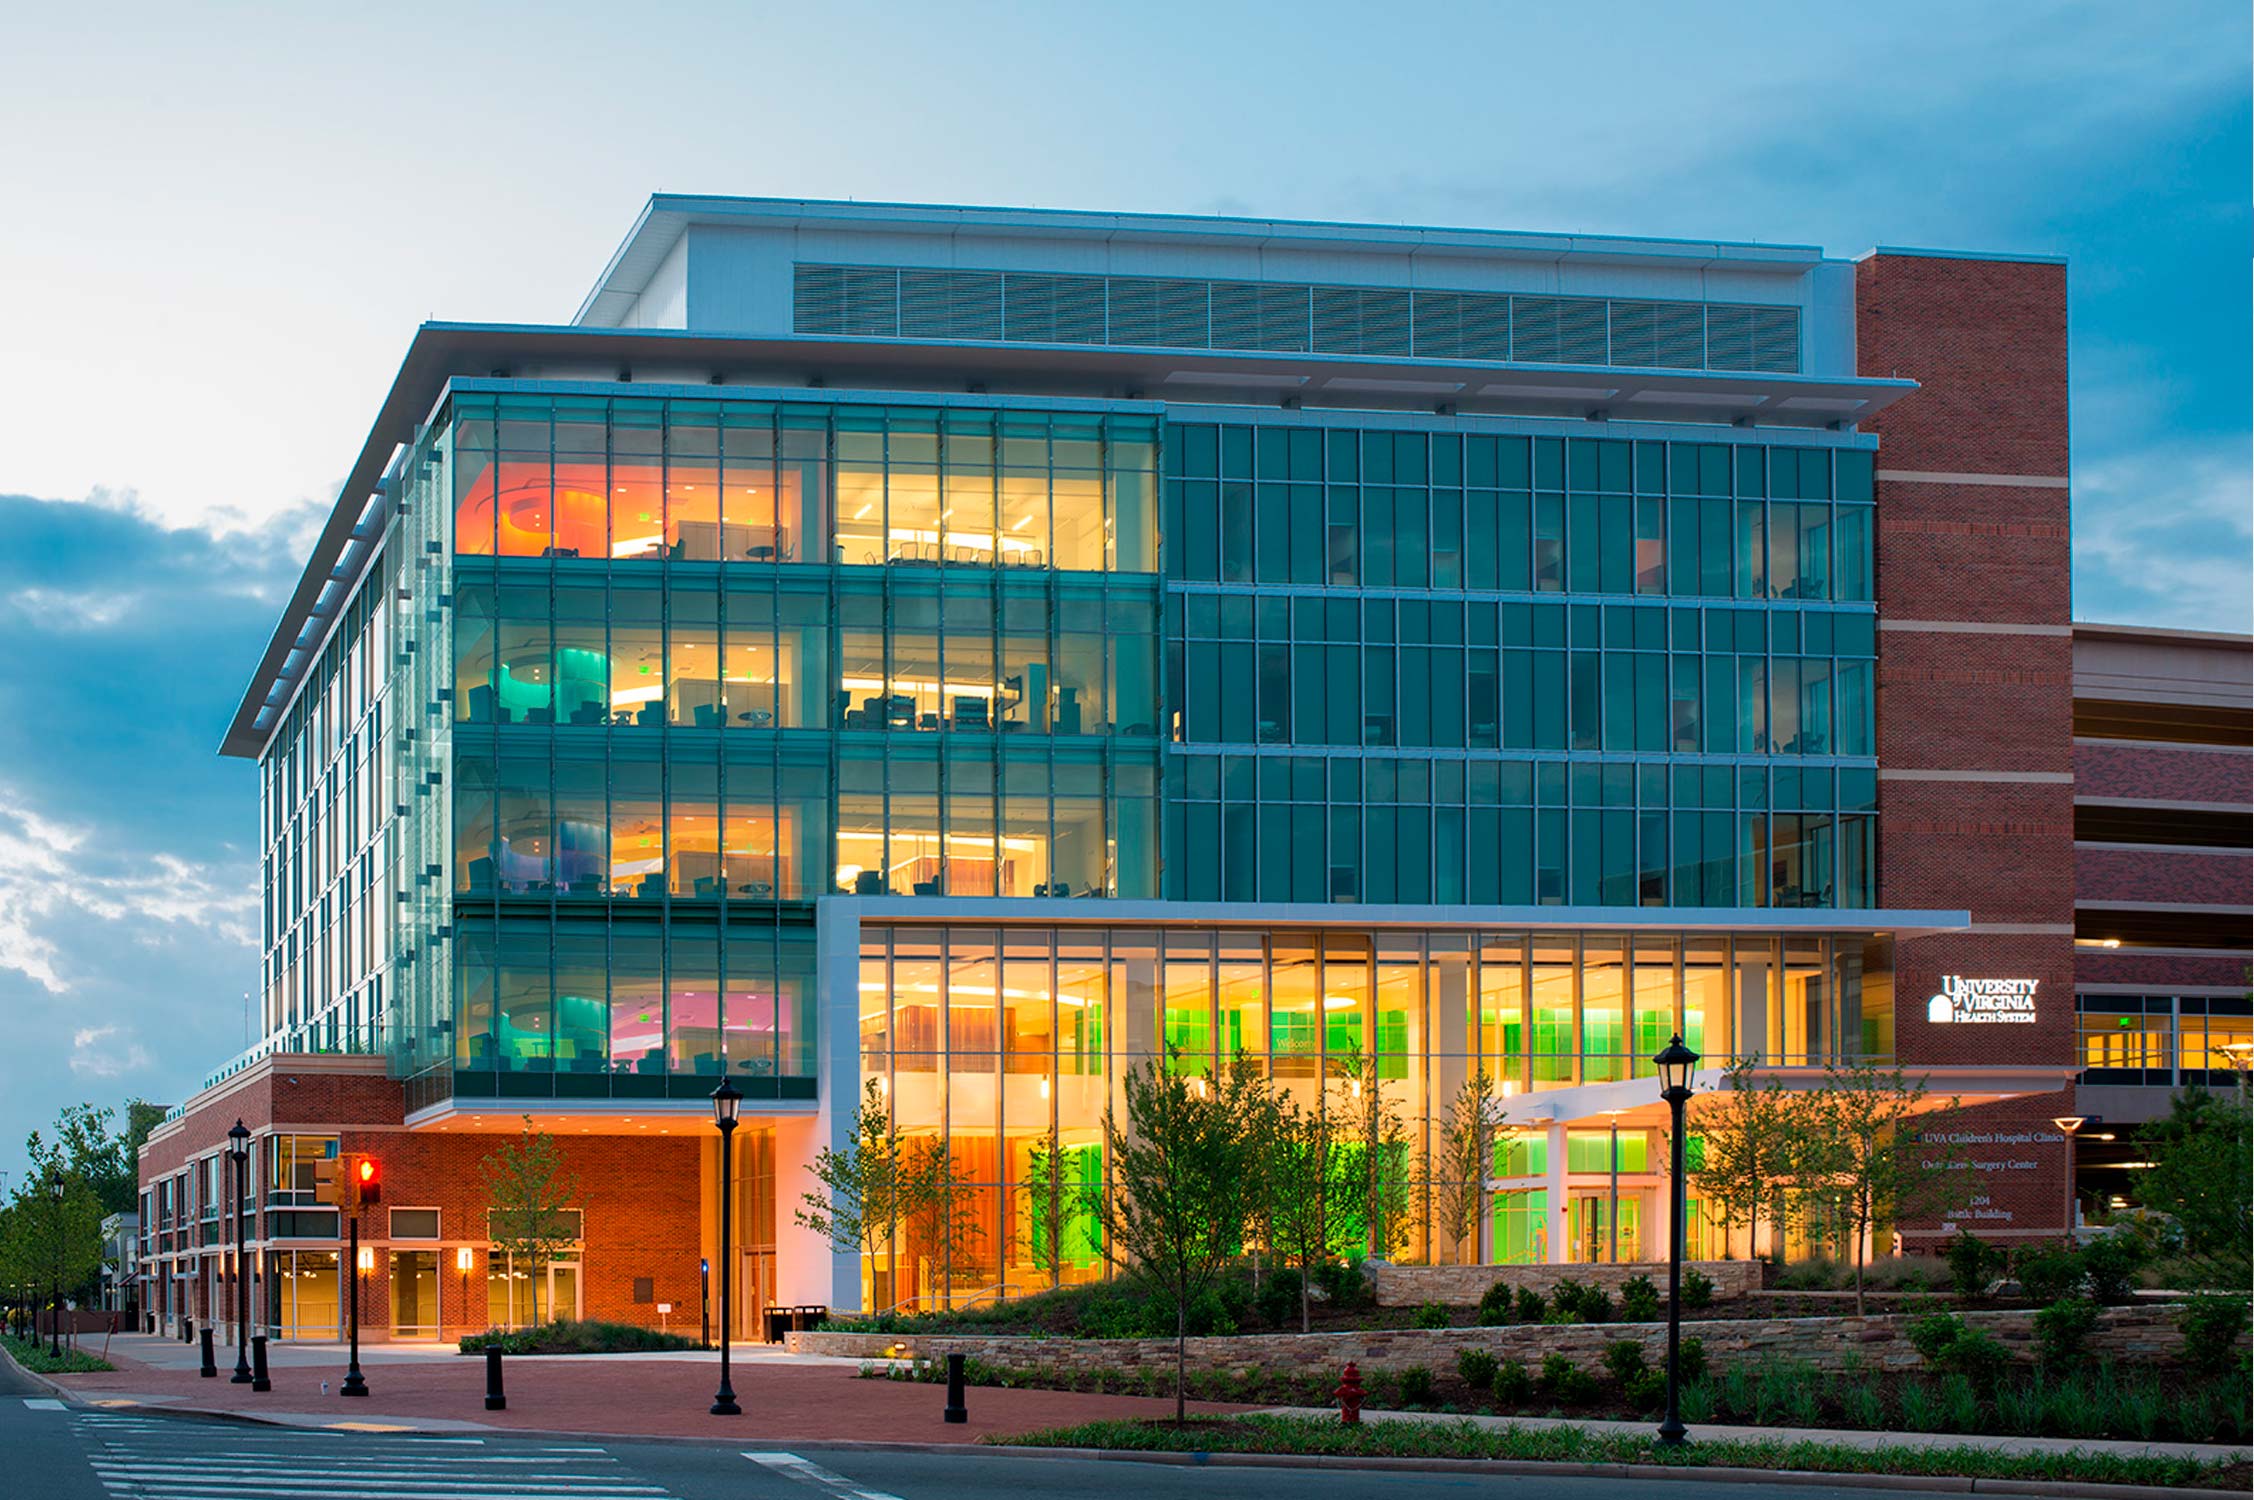 UVA Children's Hospital Battle Building